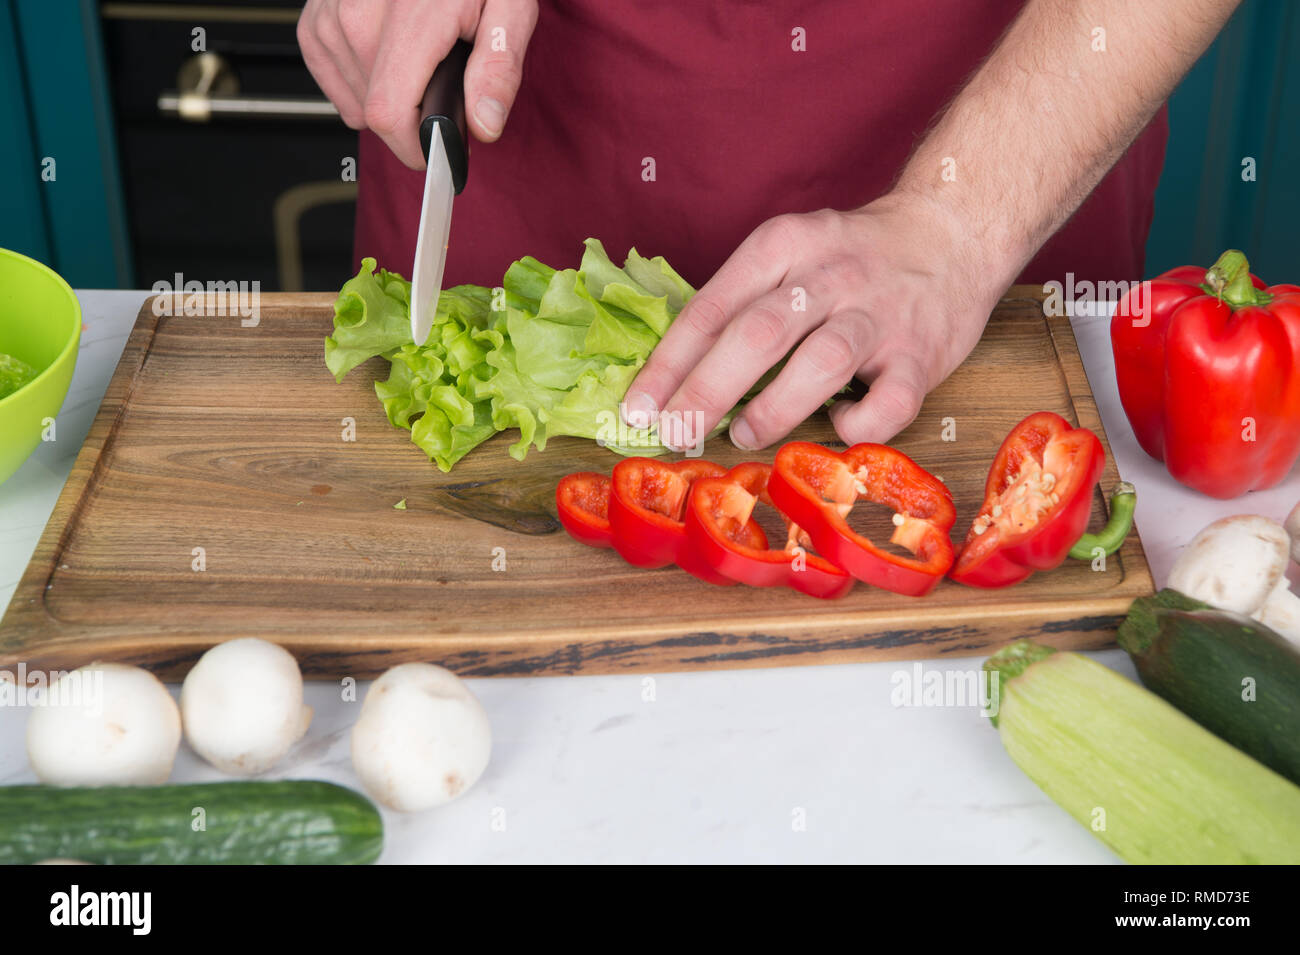 Tenga cuidado con la cuchilla. Chef enseña cómo cortar verduras  rápidamente. Picar alimentos de manera segura y eficiente, asegúrese de que  use las herramientas adecuadas. Aprenda cómo sujetar la cuchilla  correctamente y